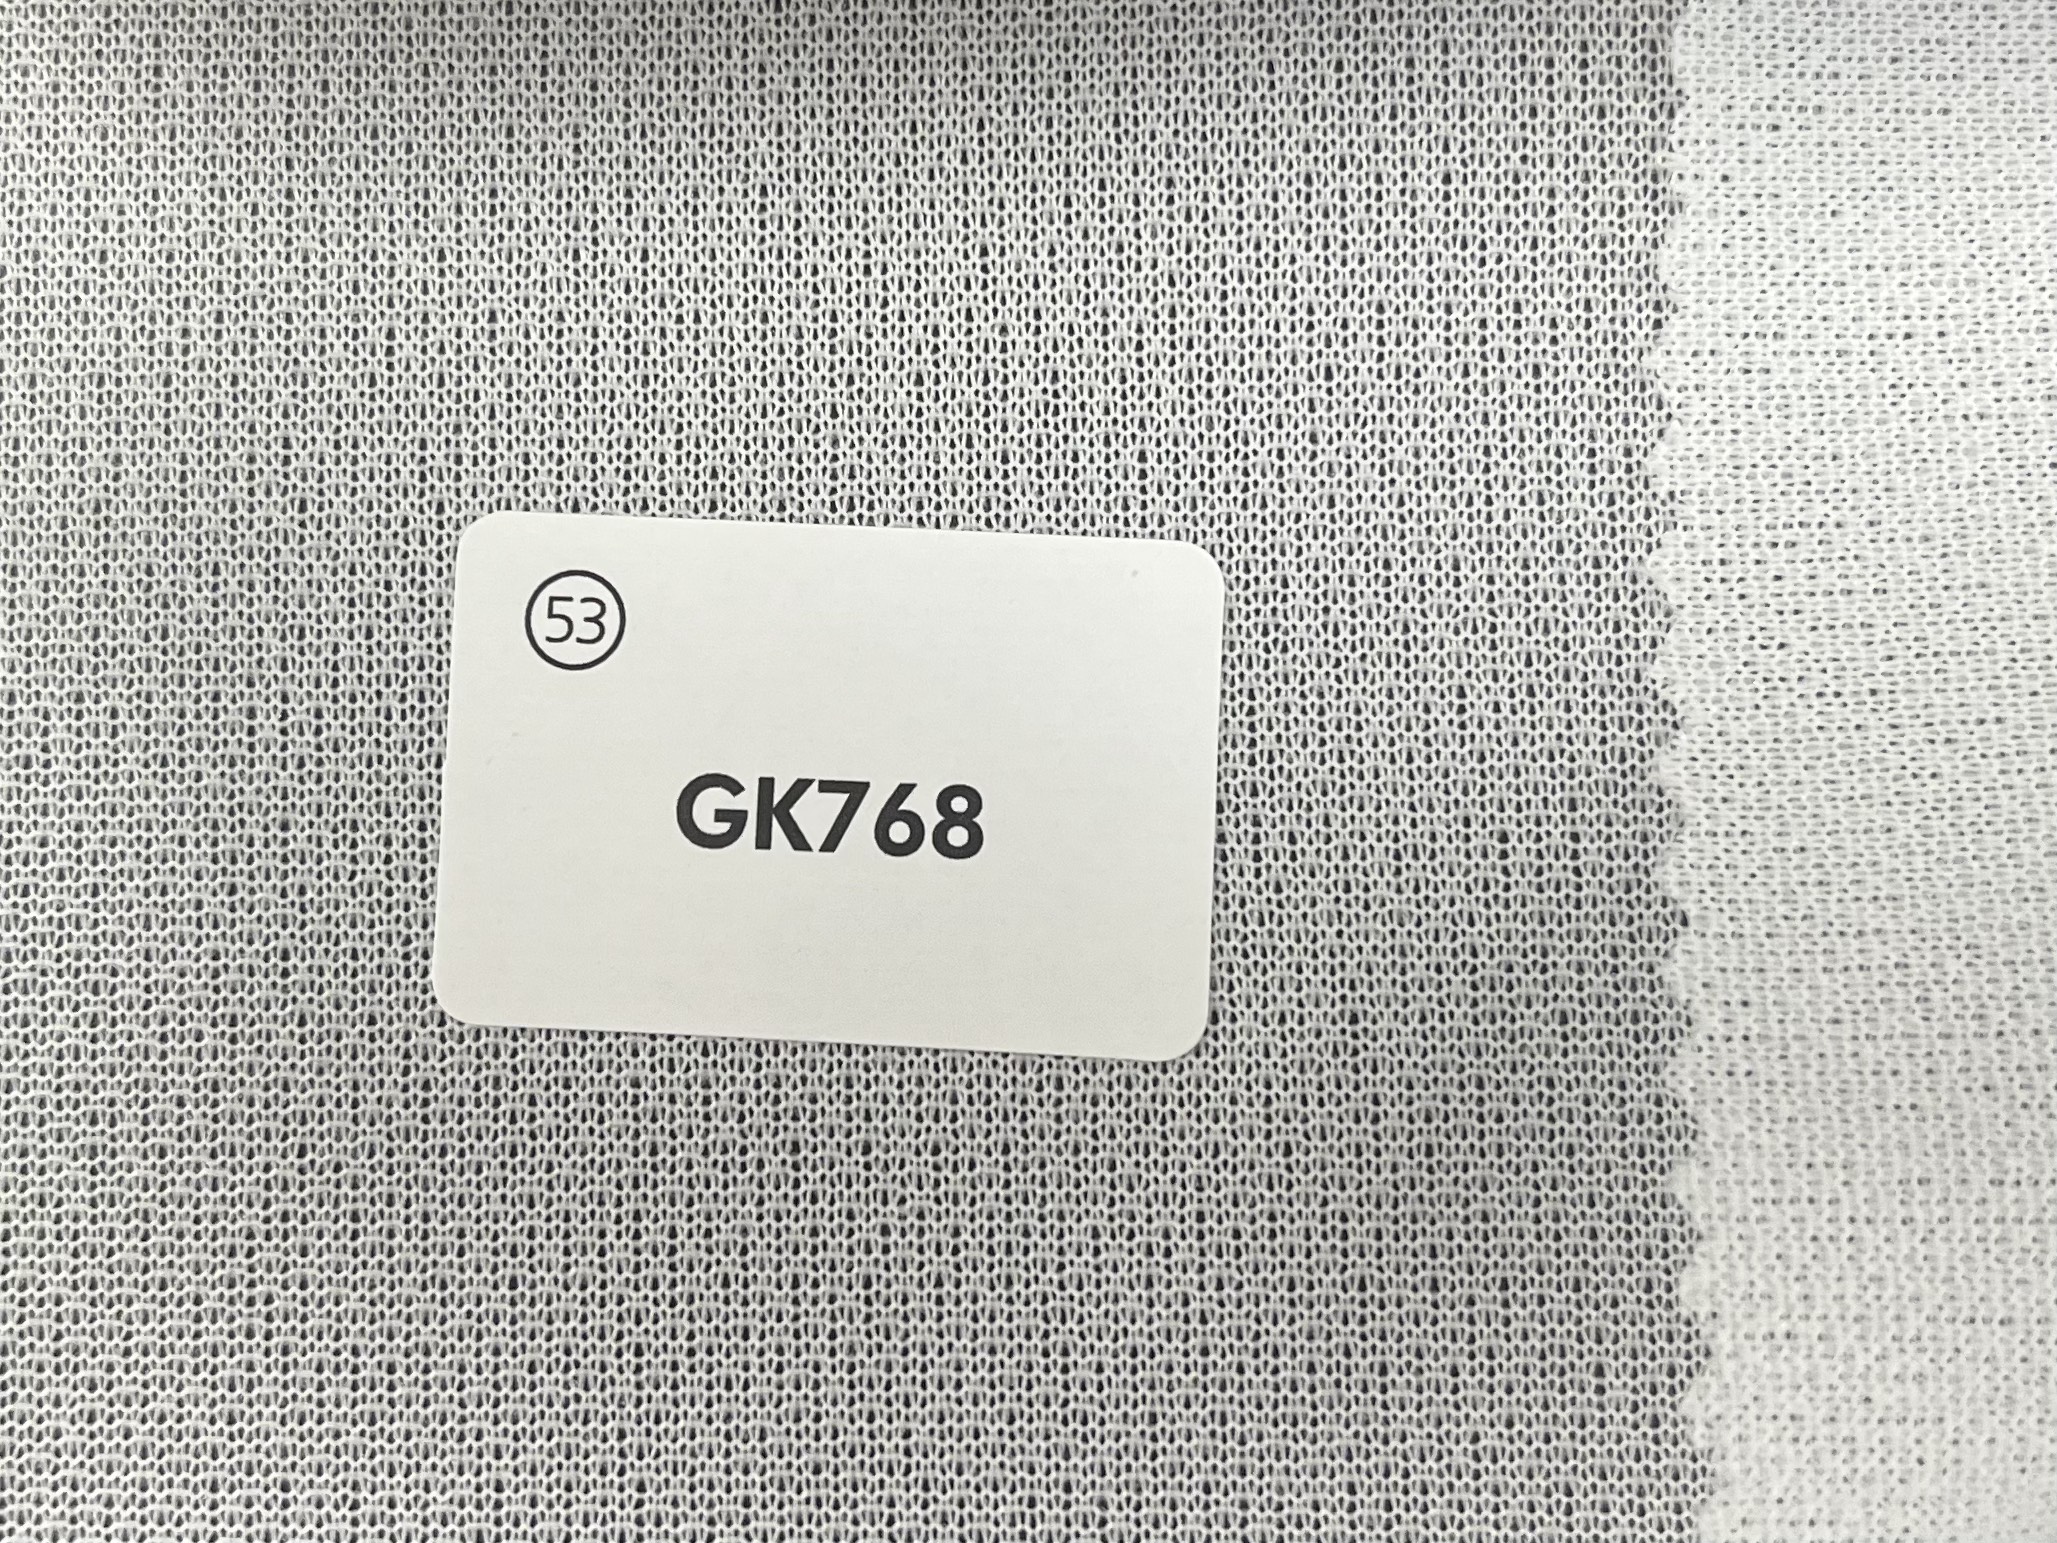 GK768